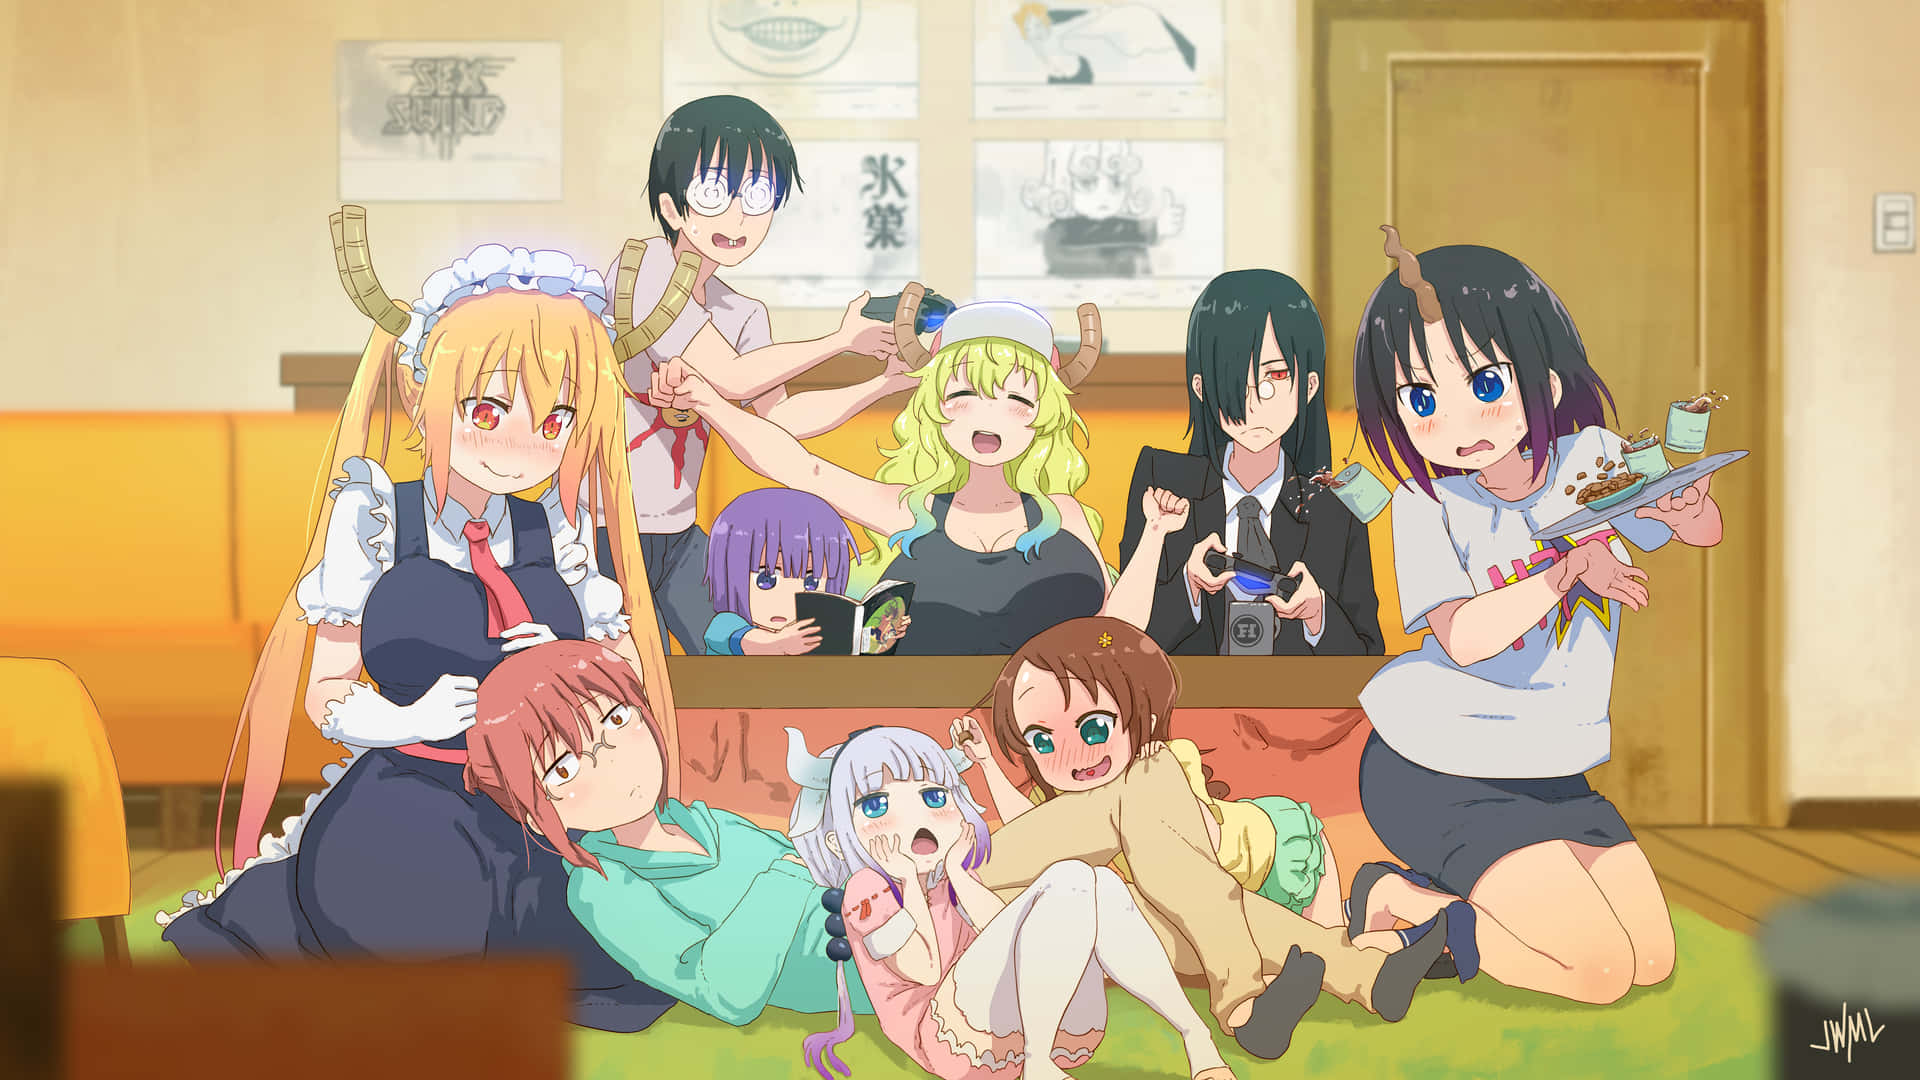 Ungrupo De Chicas Anime Sentadas En El Suelo Fondo de pantalla